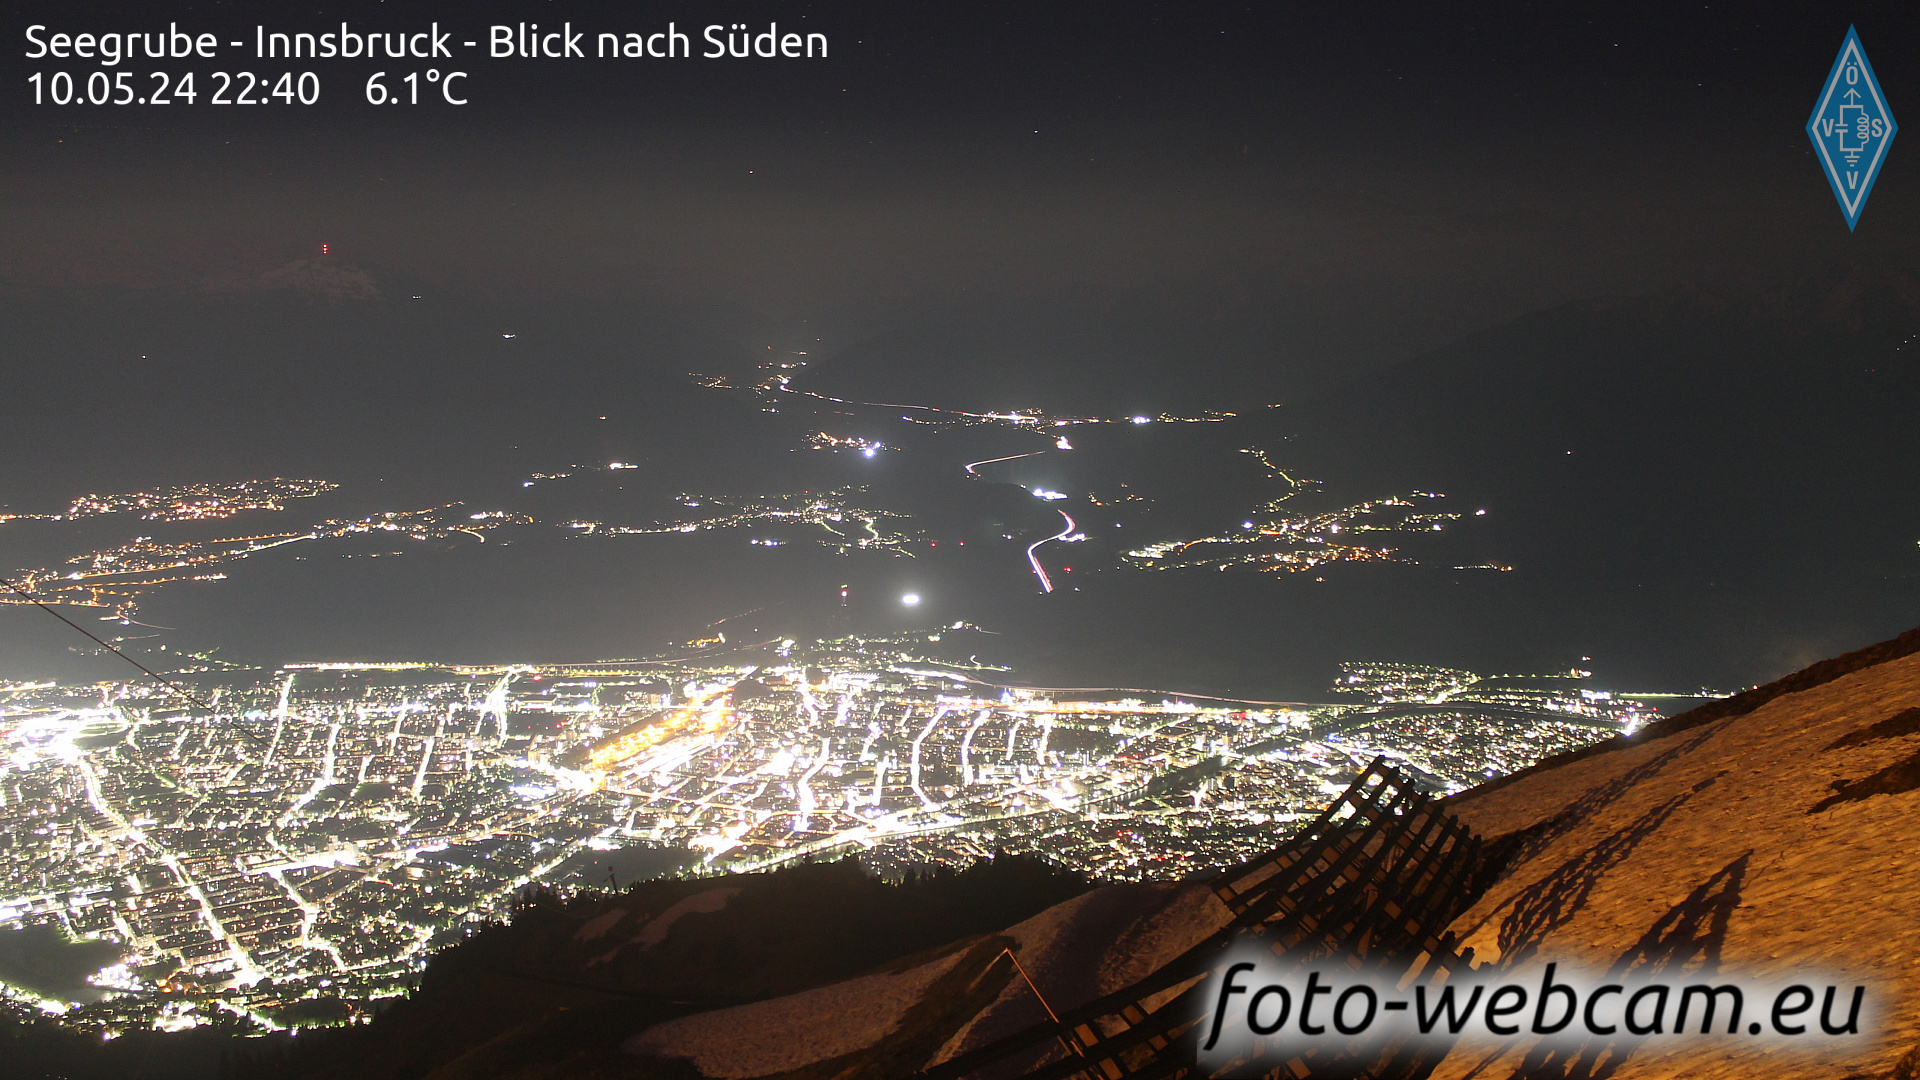 Innsbruck Dom. 22:48